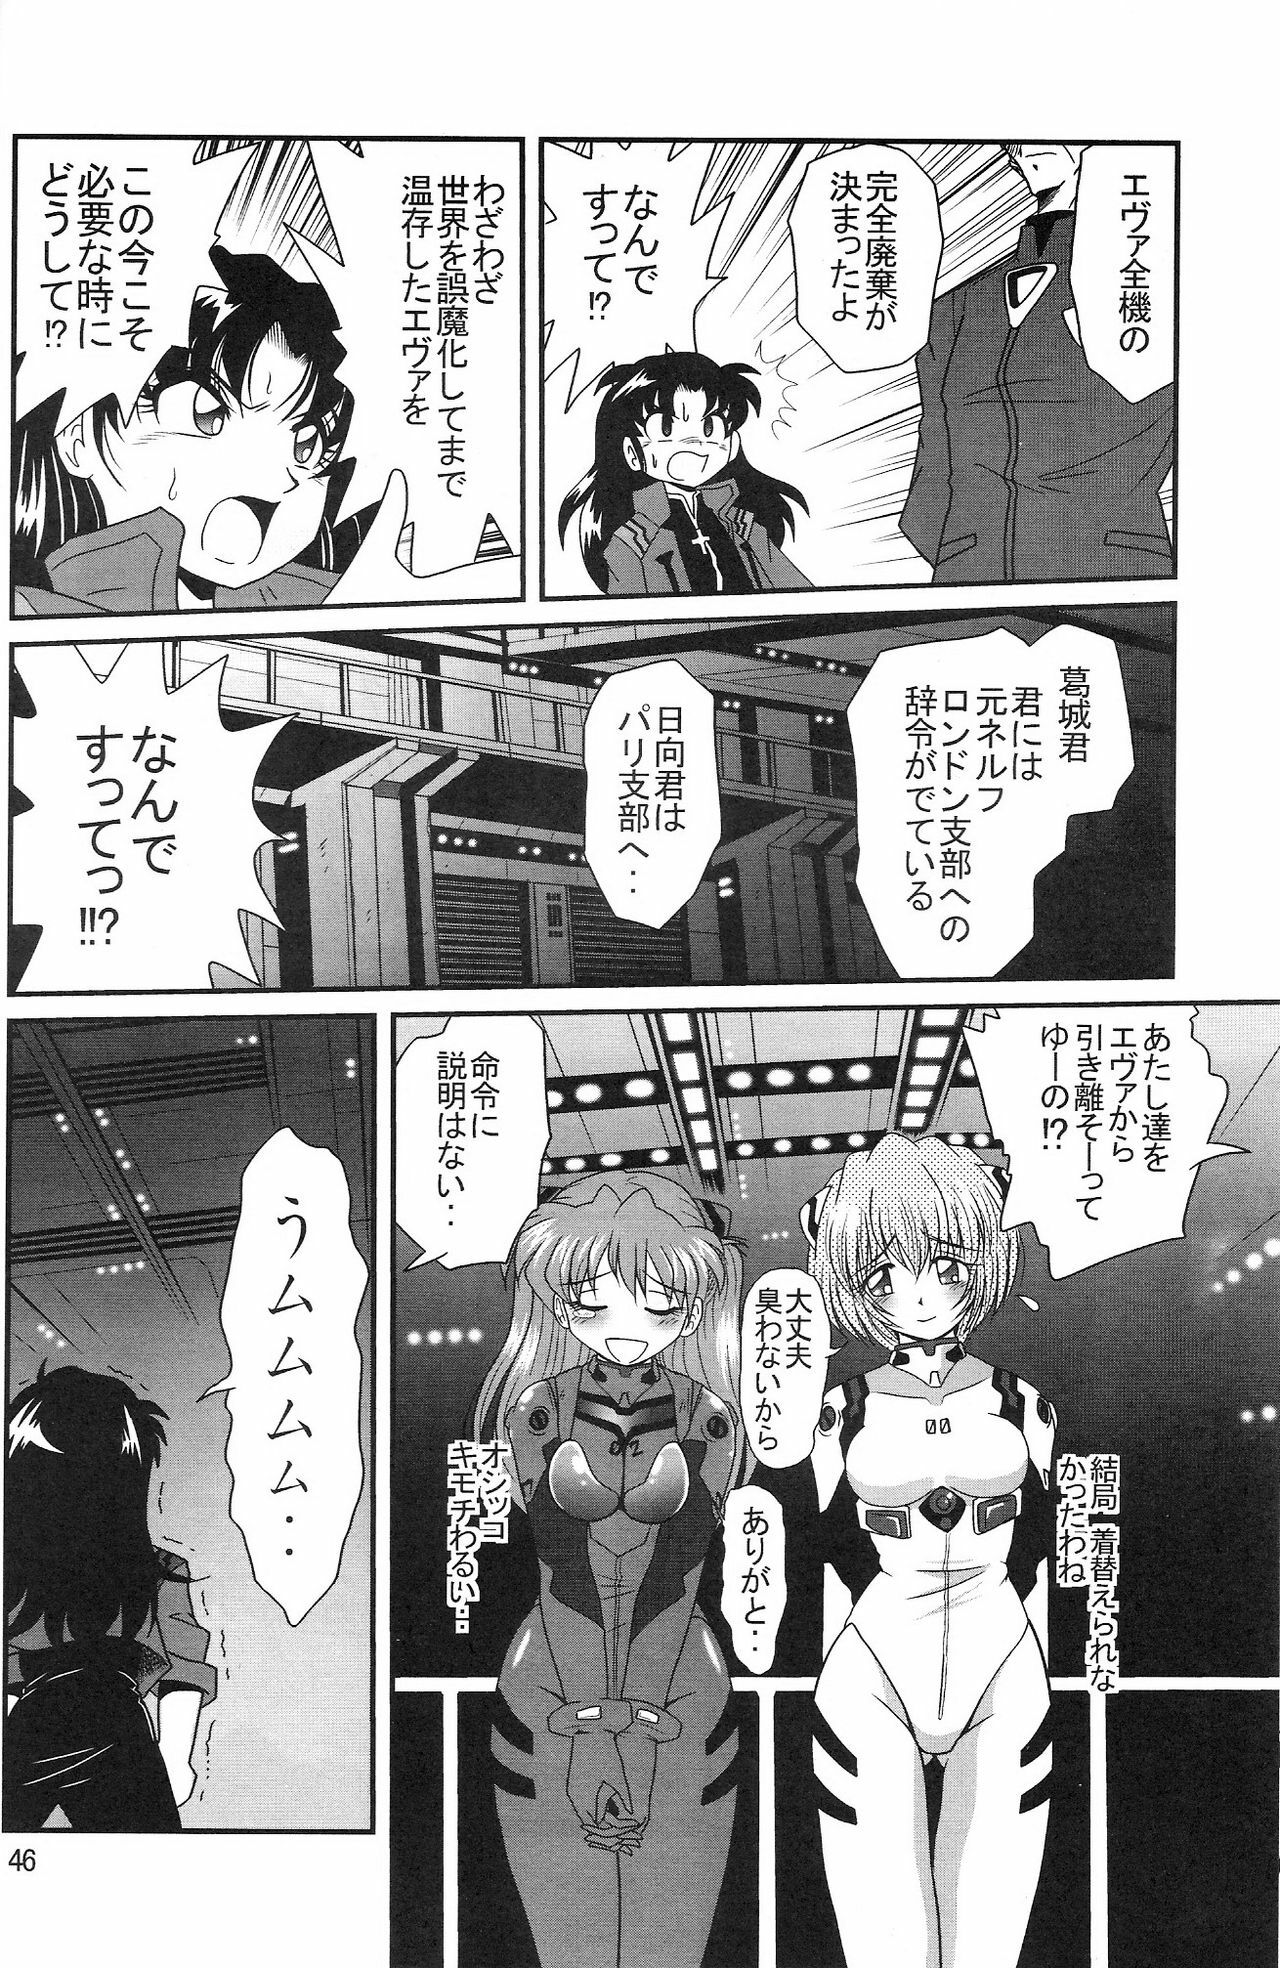 (COMIC1) [Thirty Saver Street 2D Shooting (Maki Hideto, Sawara Kazumitsu, Yonige-ya No Kyou)] Second Uchuu Keikaku 2 (Neon Genesis Evangelion) page 46 full